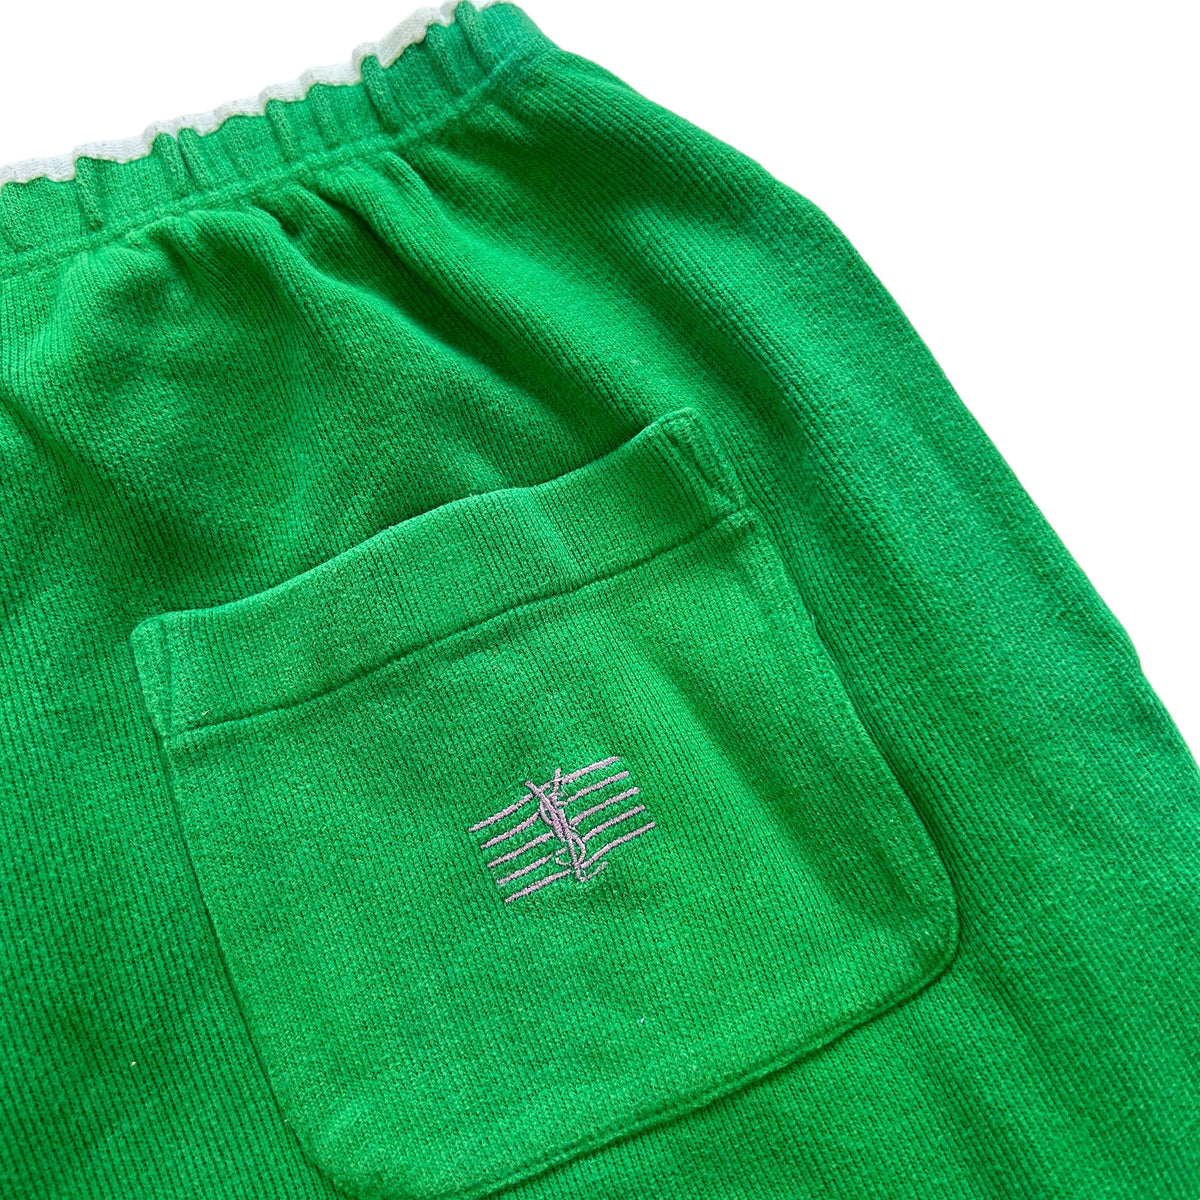 Vintage YSL Yves Saint Laurent Sweat Pant Shorts Size XL